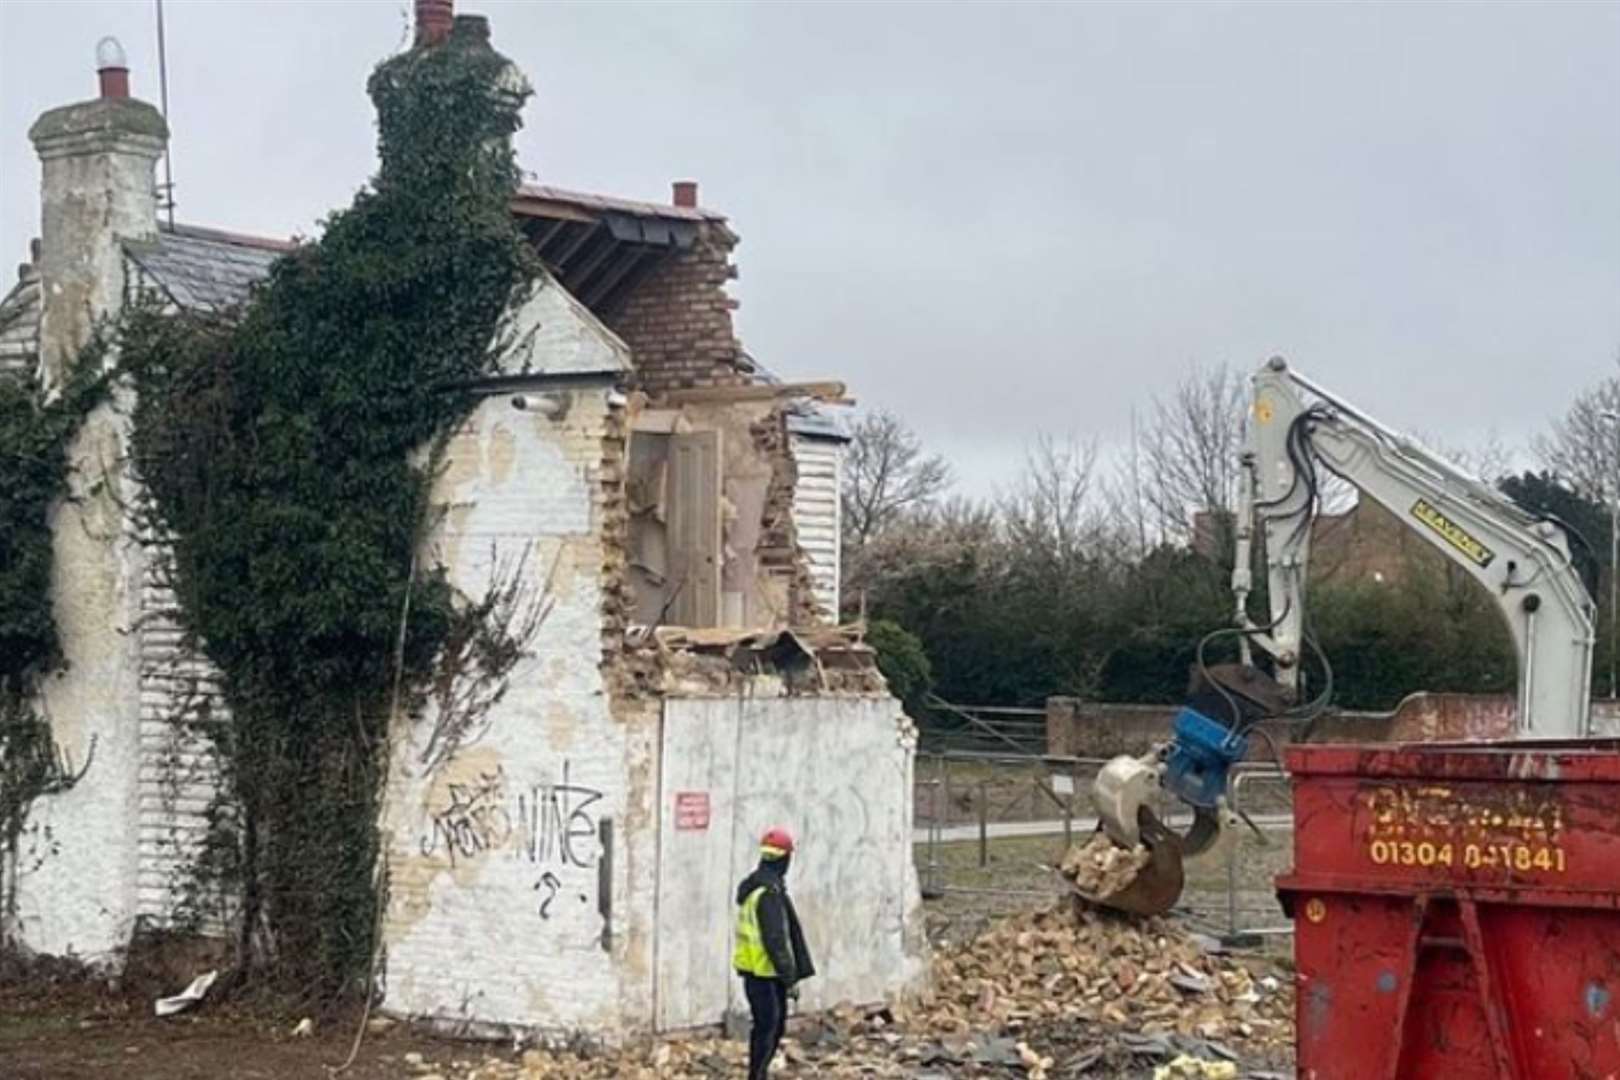 Builders in Herne Bay unwittingly began demolishing the work on Tuesday. Picture: Banksy via Instagram